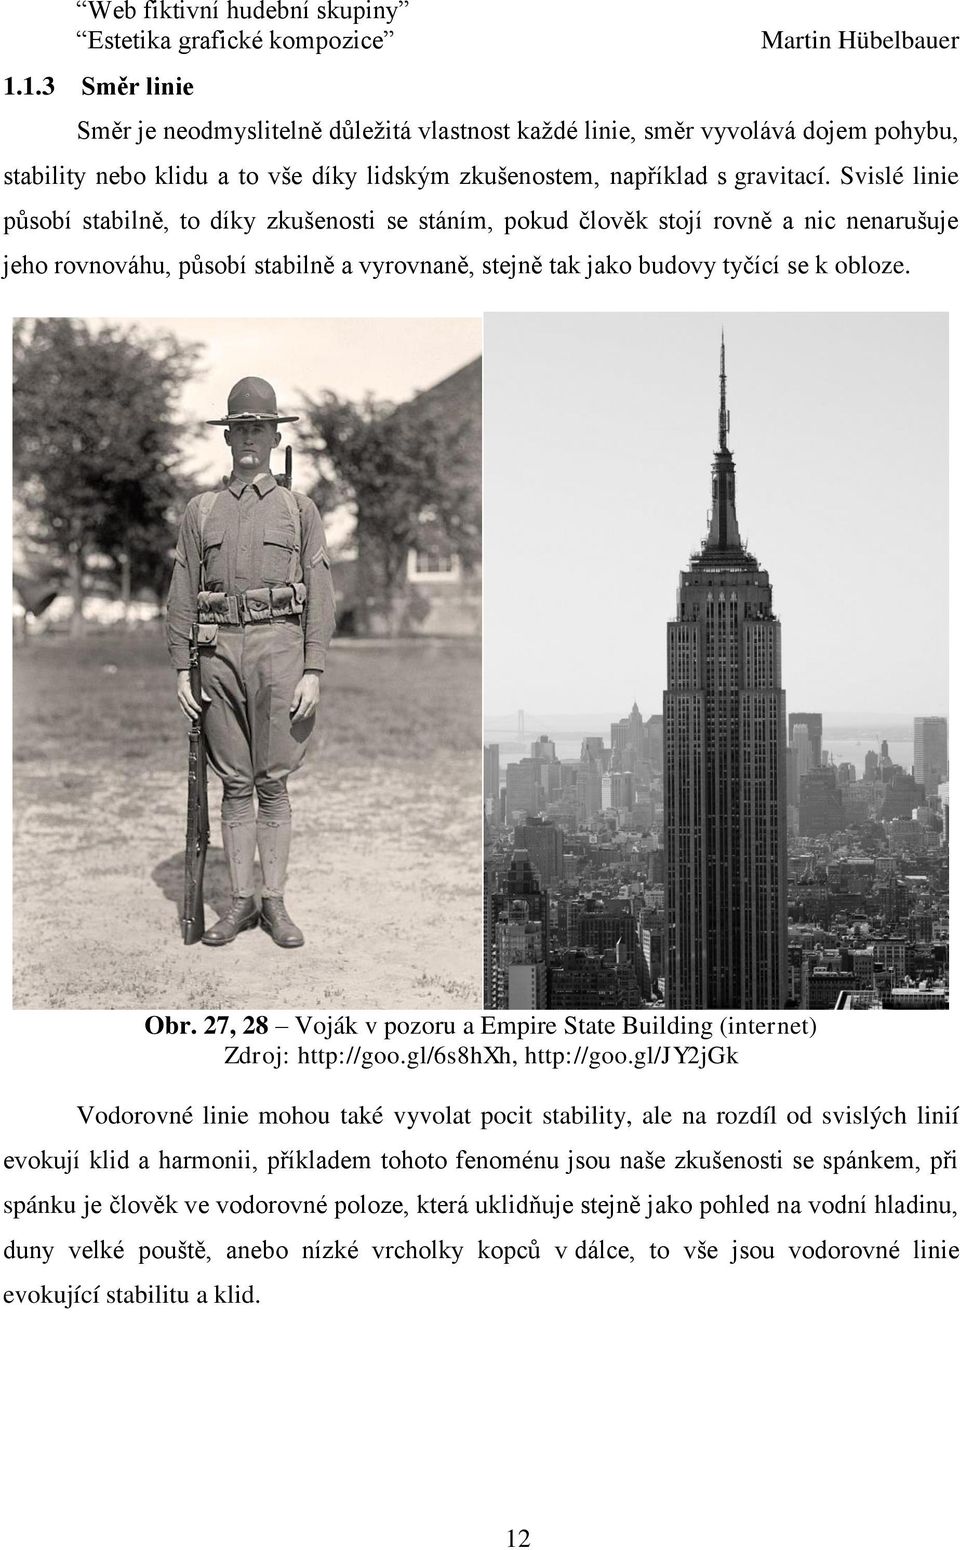 27, 28 Voják v pozoru a Empire State Building (internet) Zdroj: http://goo.gl/6s8hxh, http://goo.